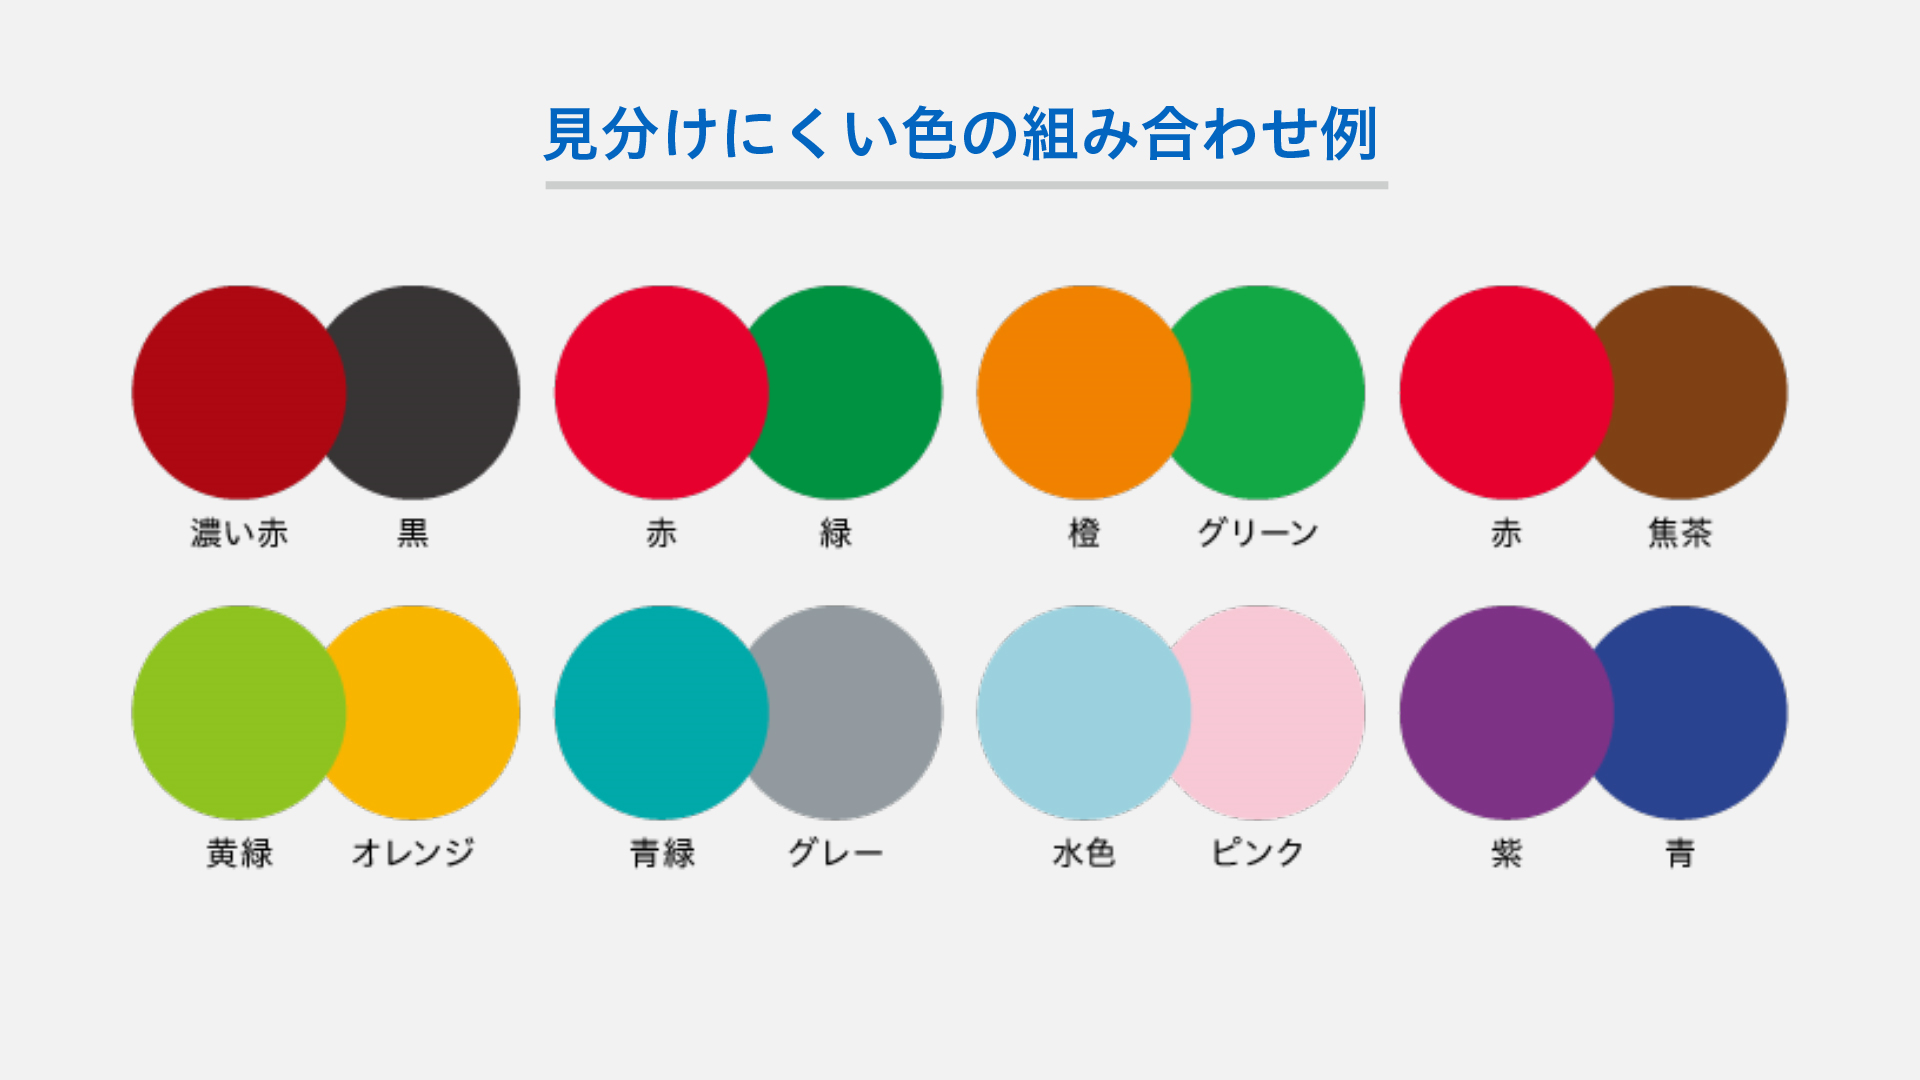 8種類の色の組み合わせ。濃い赤と黒、赤と緑、橙とグリーン、赤と焦茶、黄緑とオレンジ、青緑とグレー、水色とピンク、紫と青。